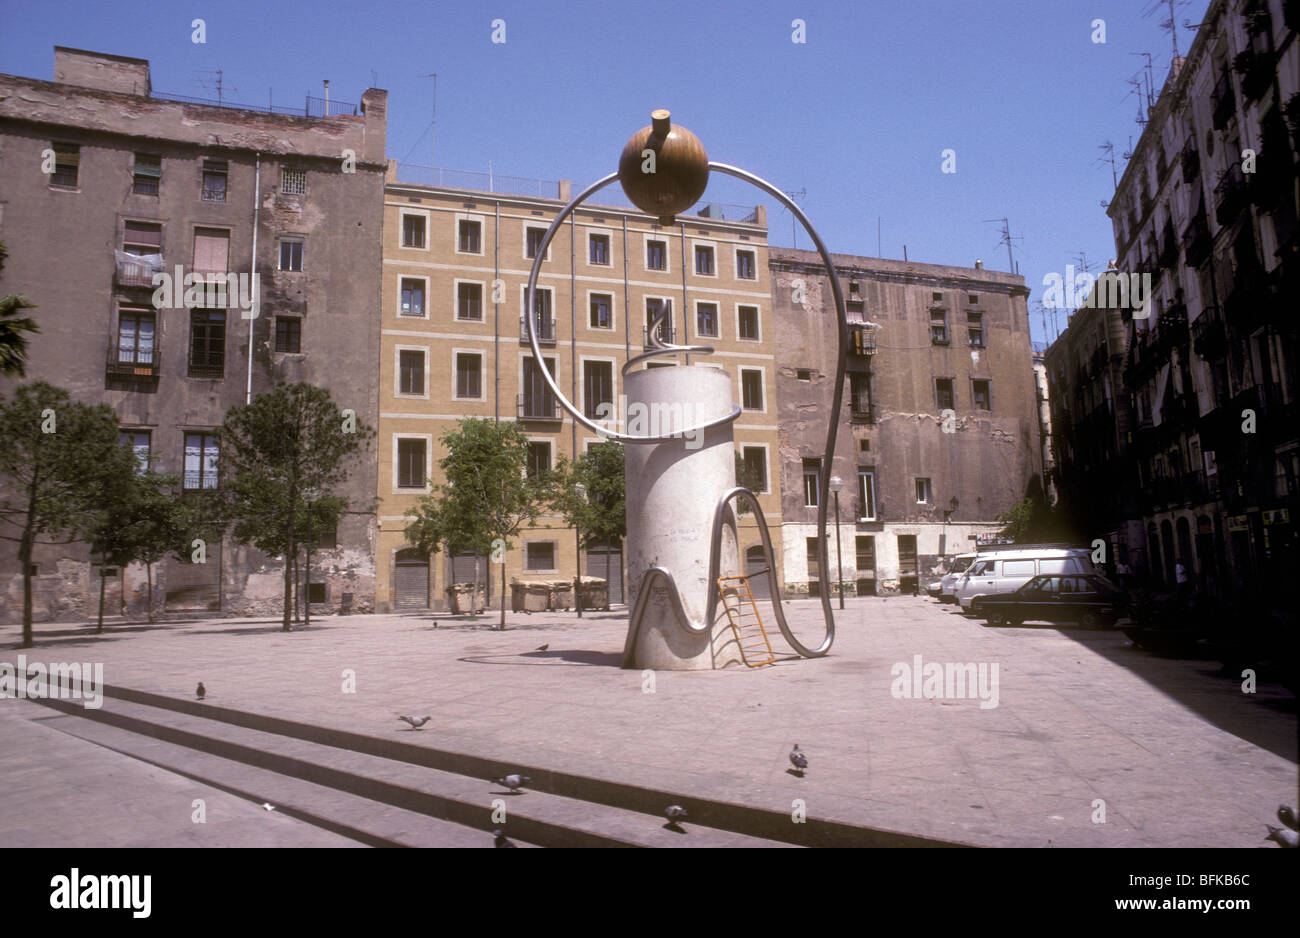 Arte en la calle mostrando el viejo juego de tomar un aro sobre una barra sin tocarlo, en un barrio residencial de Barcelona. Foto de stock